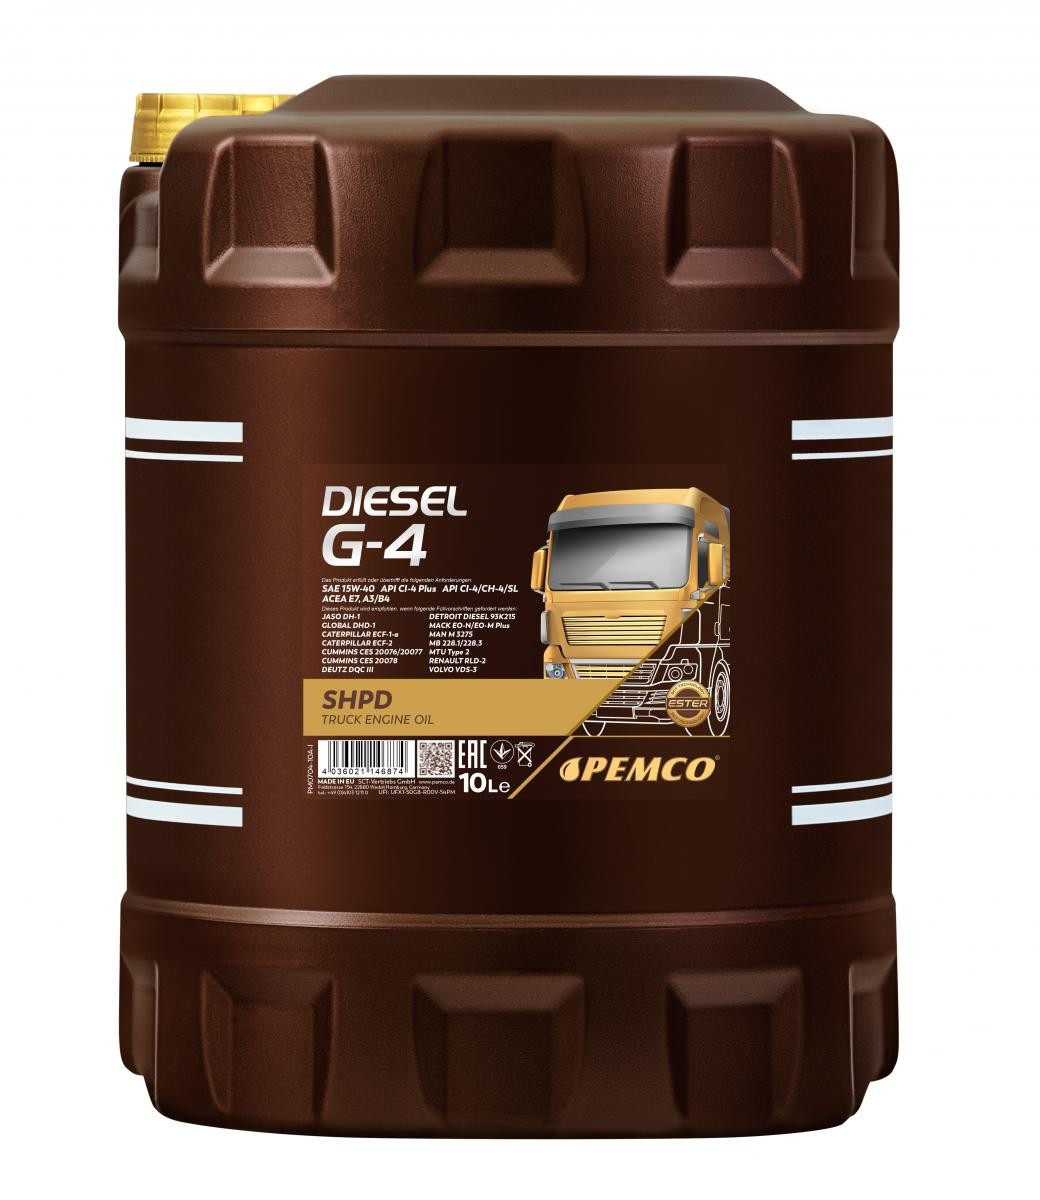 Engine oil API CF-4 PEMCO - PM0704-10 Truck SHPD, DIESEL G-4 SHPD